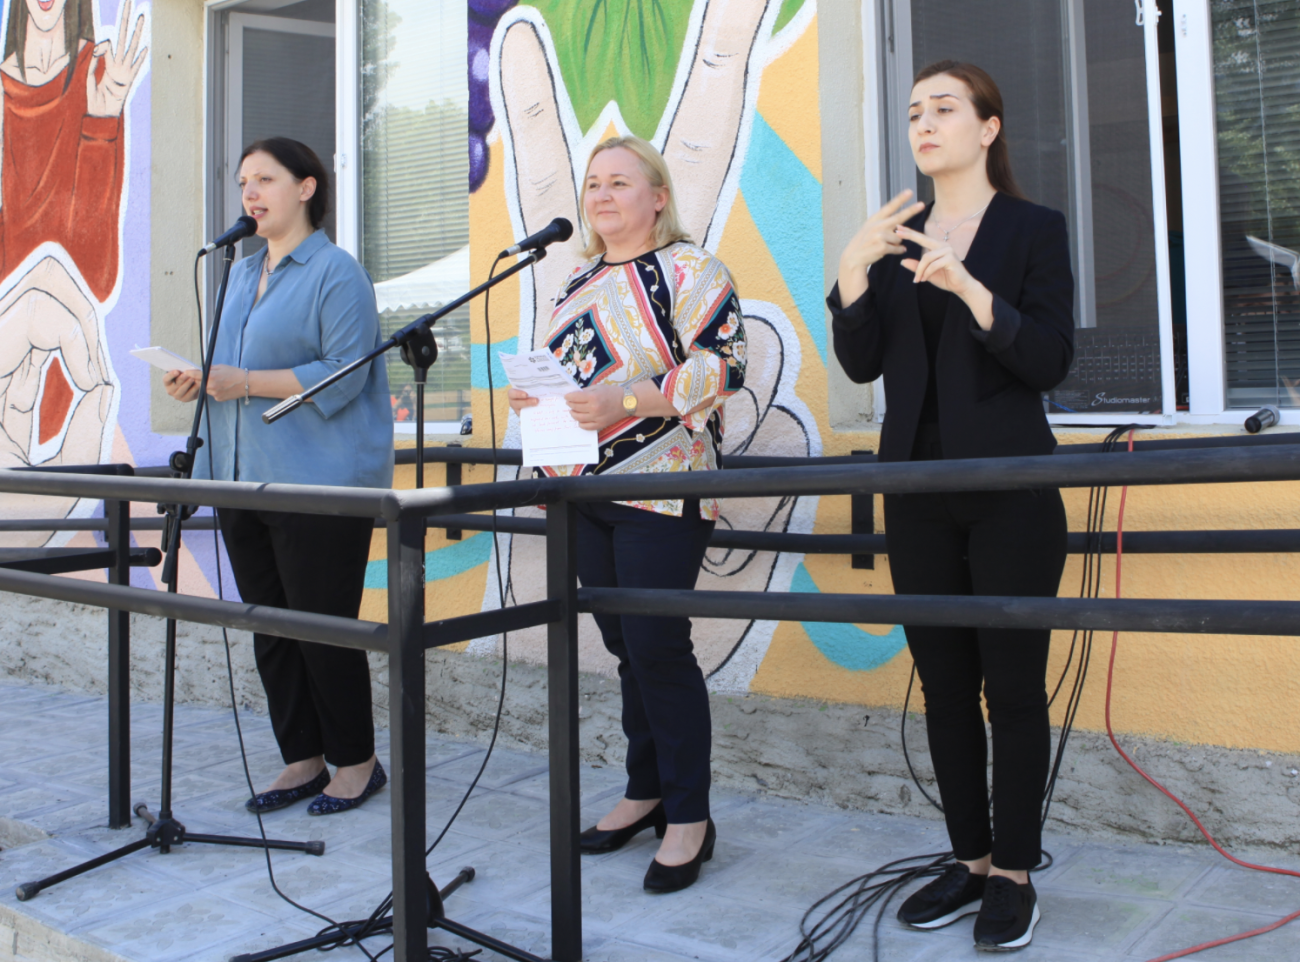 تقف ثلاث نساء أمام مبنى مزين بألوان عديدة. كما تترجم امرأة بلباس أسود الكلام إلى لغة الإشارة.